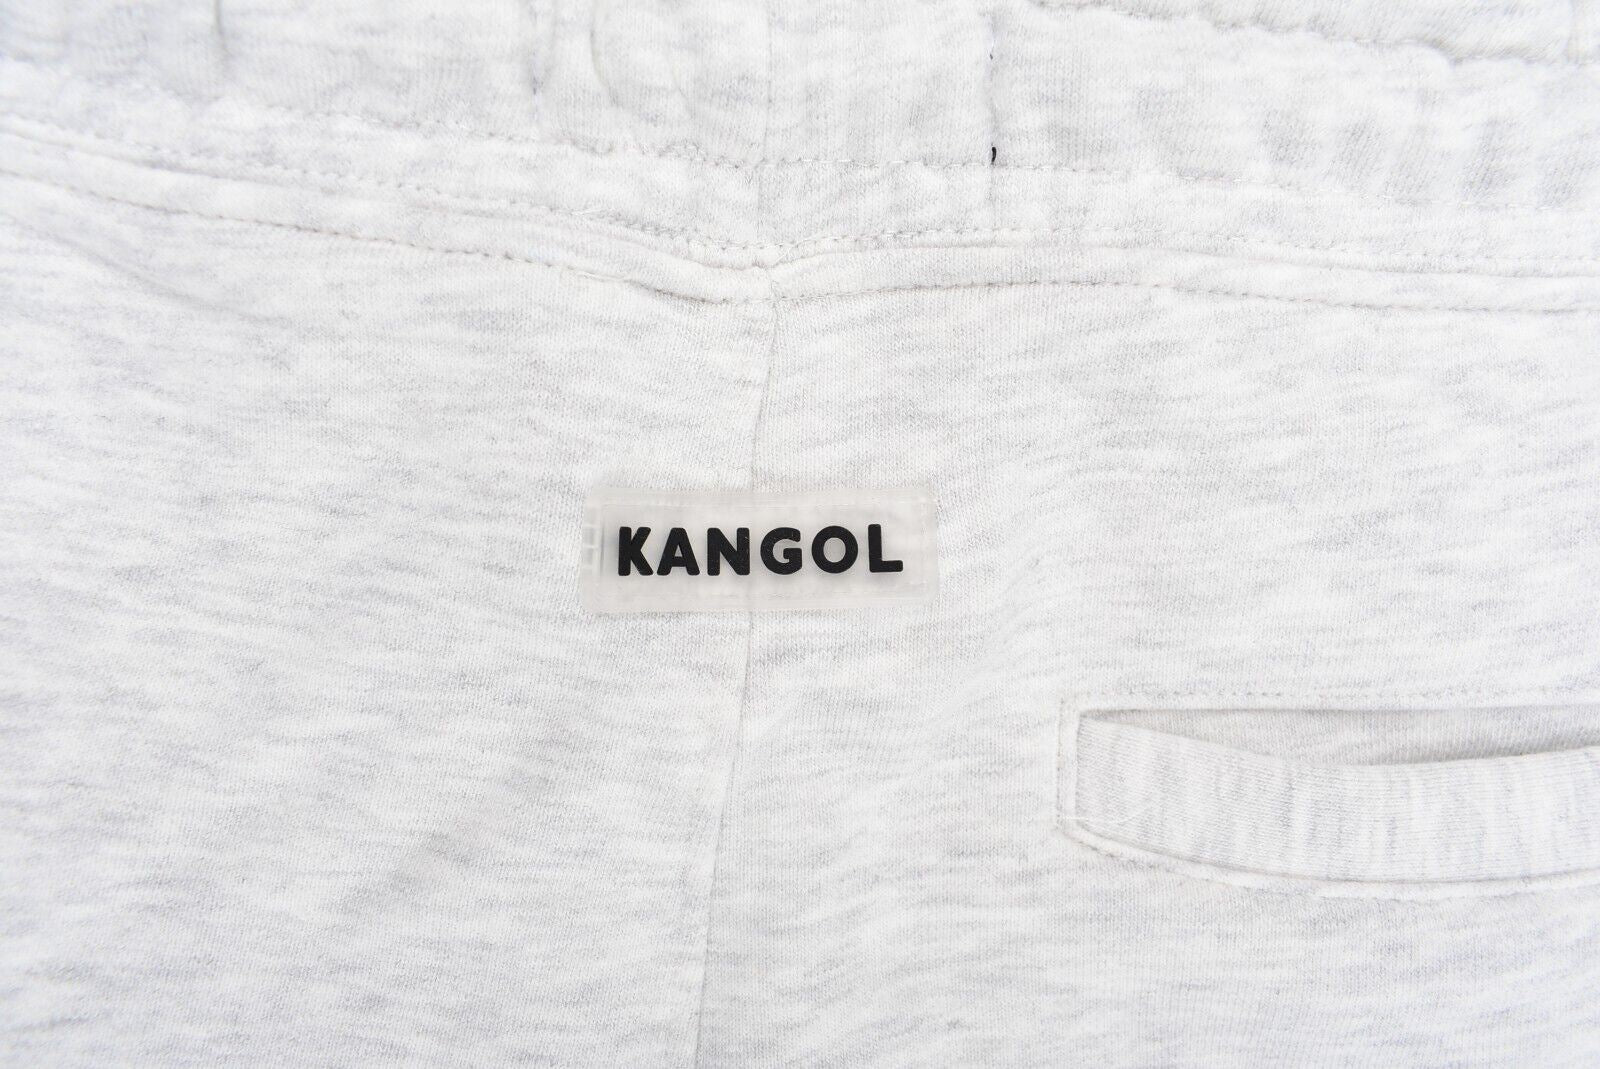 KANGOL Men's Cuffed Leg Joggers, Sweat Pants, Grey Marl, size LARGE